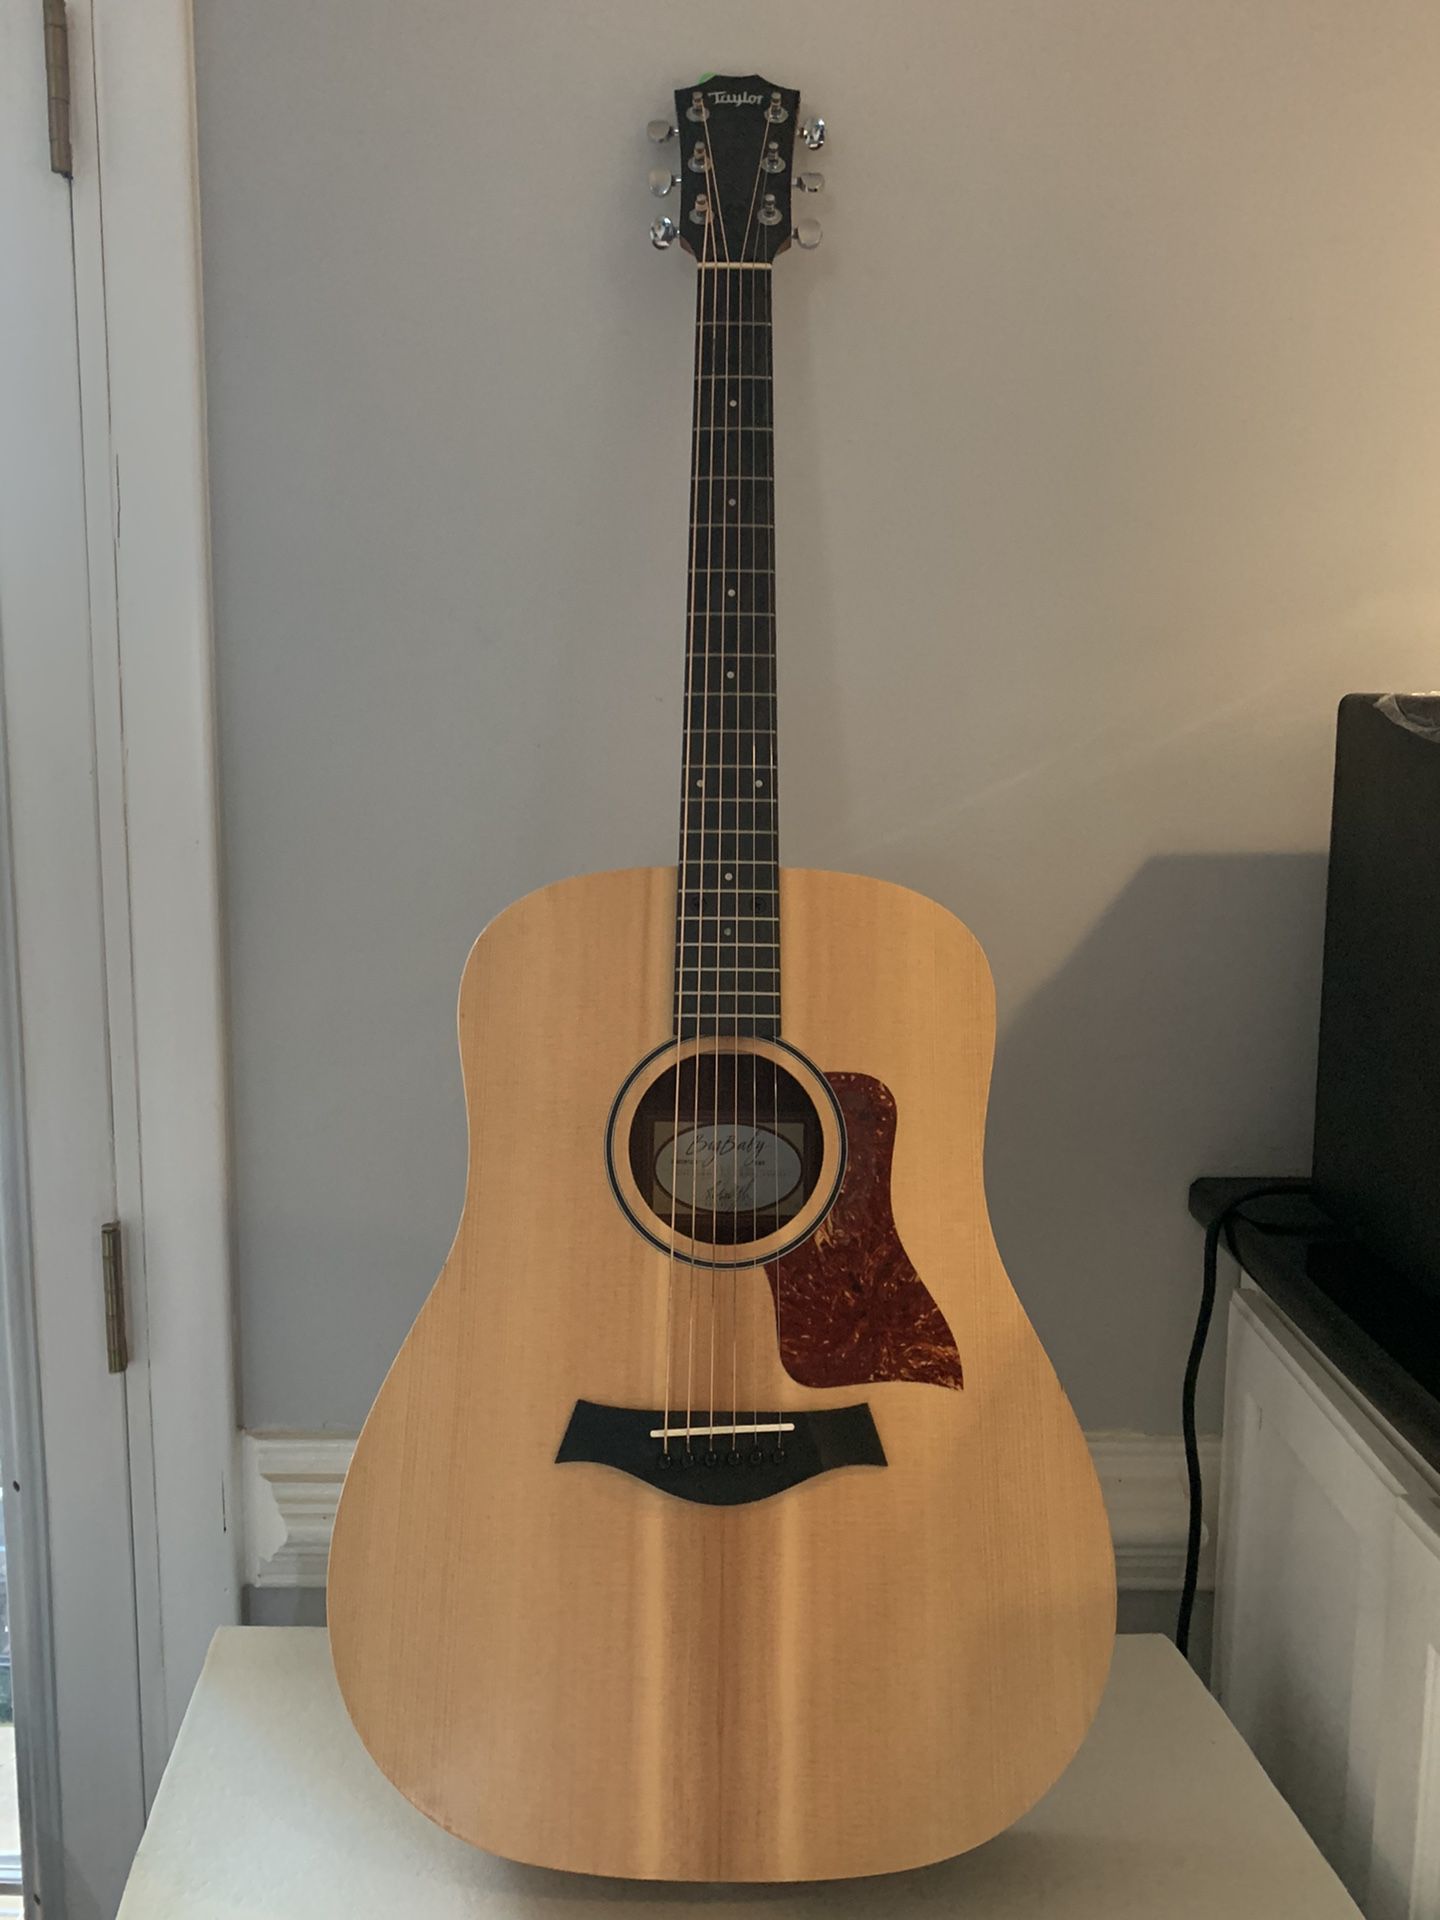 Taylor acoustic Guitar, 15/16 size